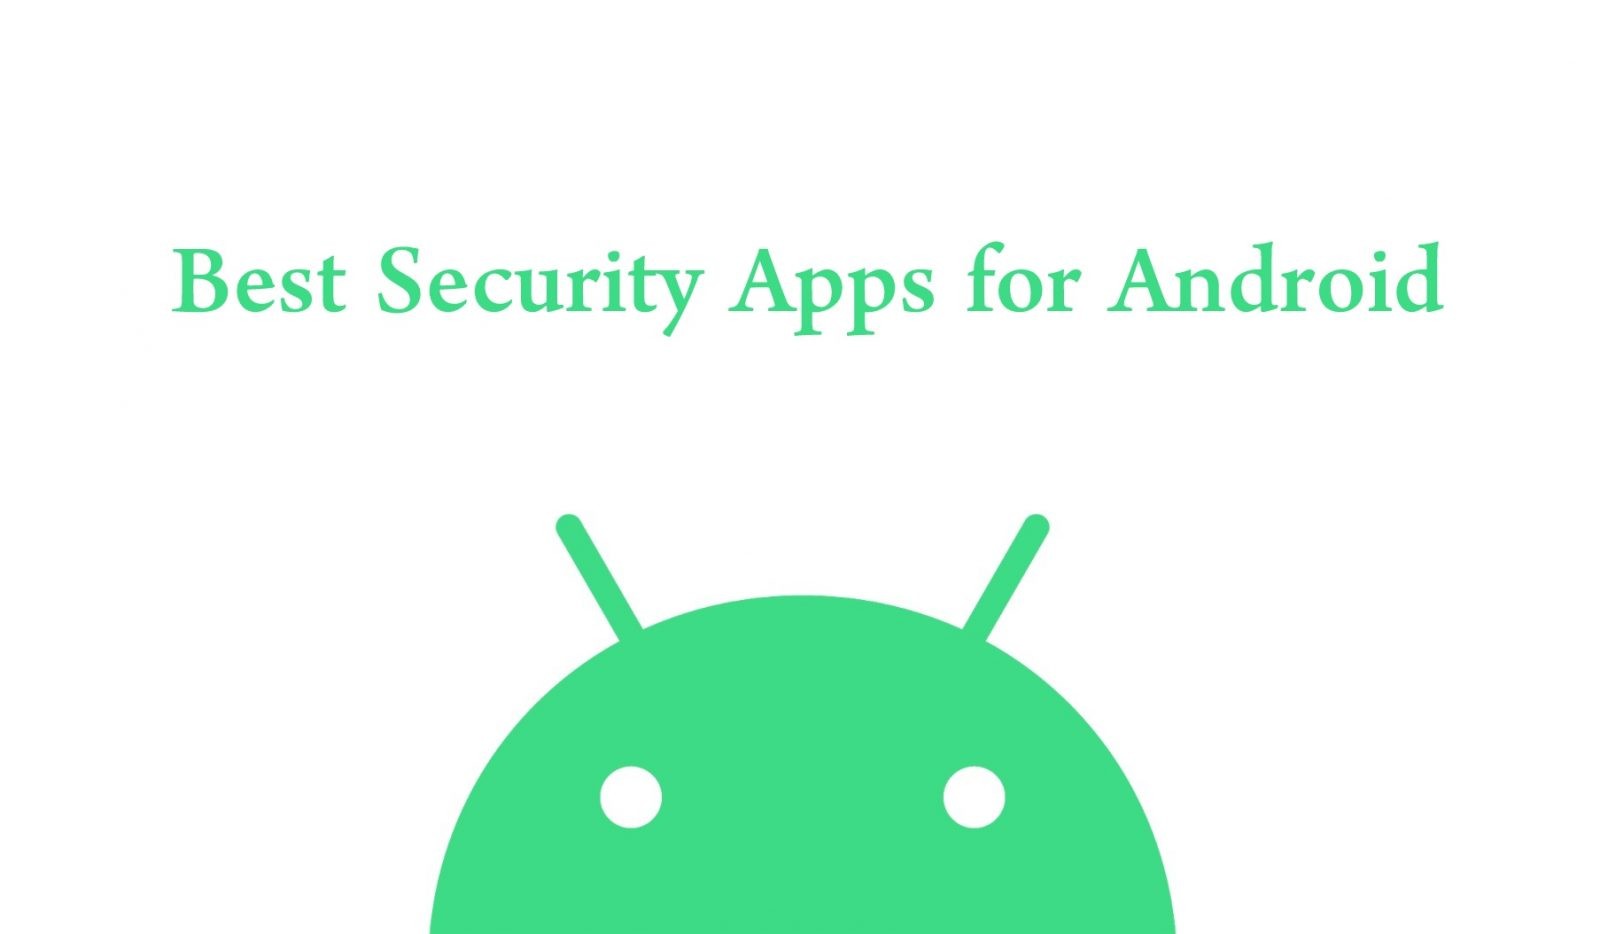 أفضل تطبيقات الأمان للهواتف الذكية والأجهزة اللوحية التي تعمل بنظام Android